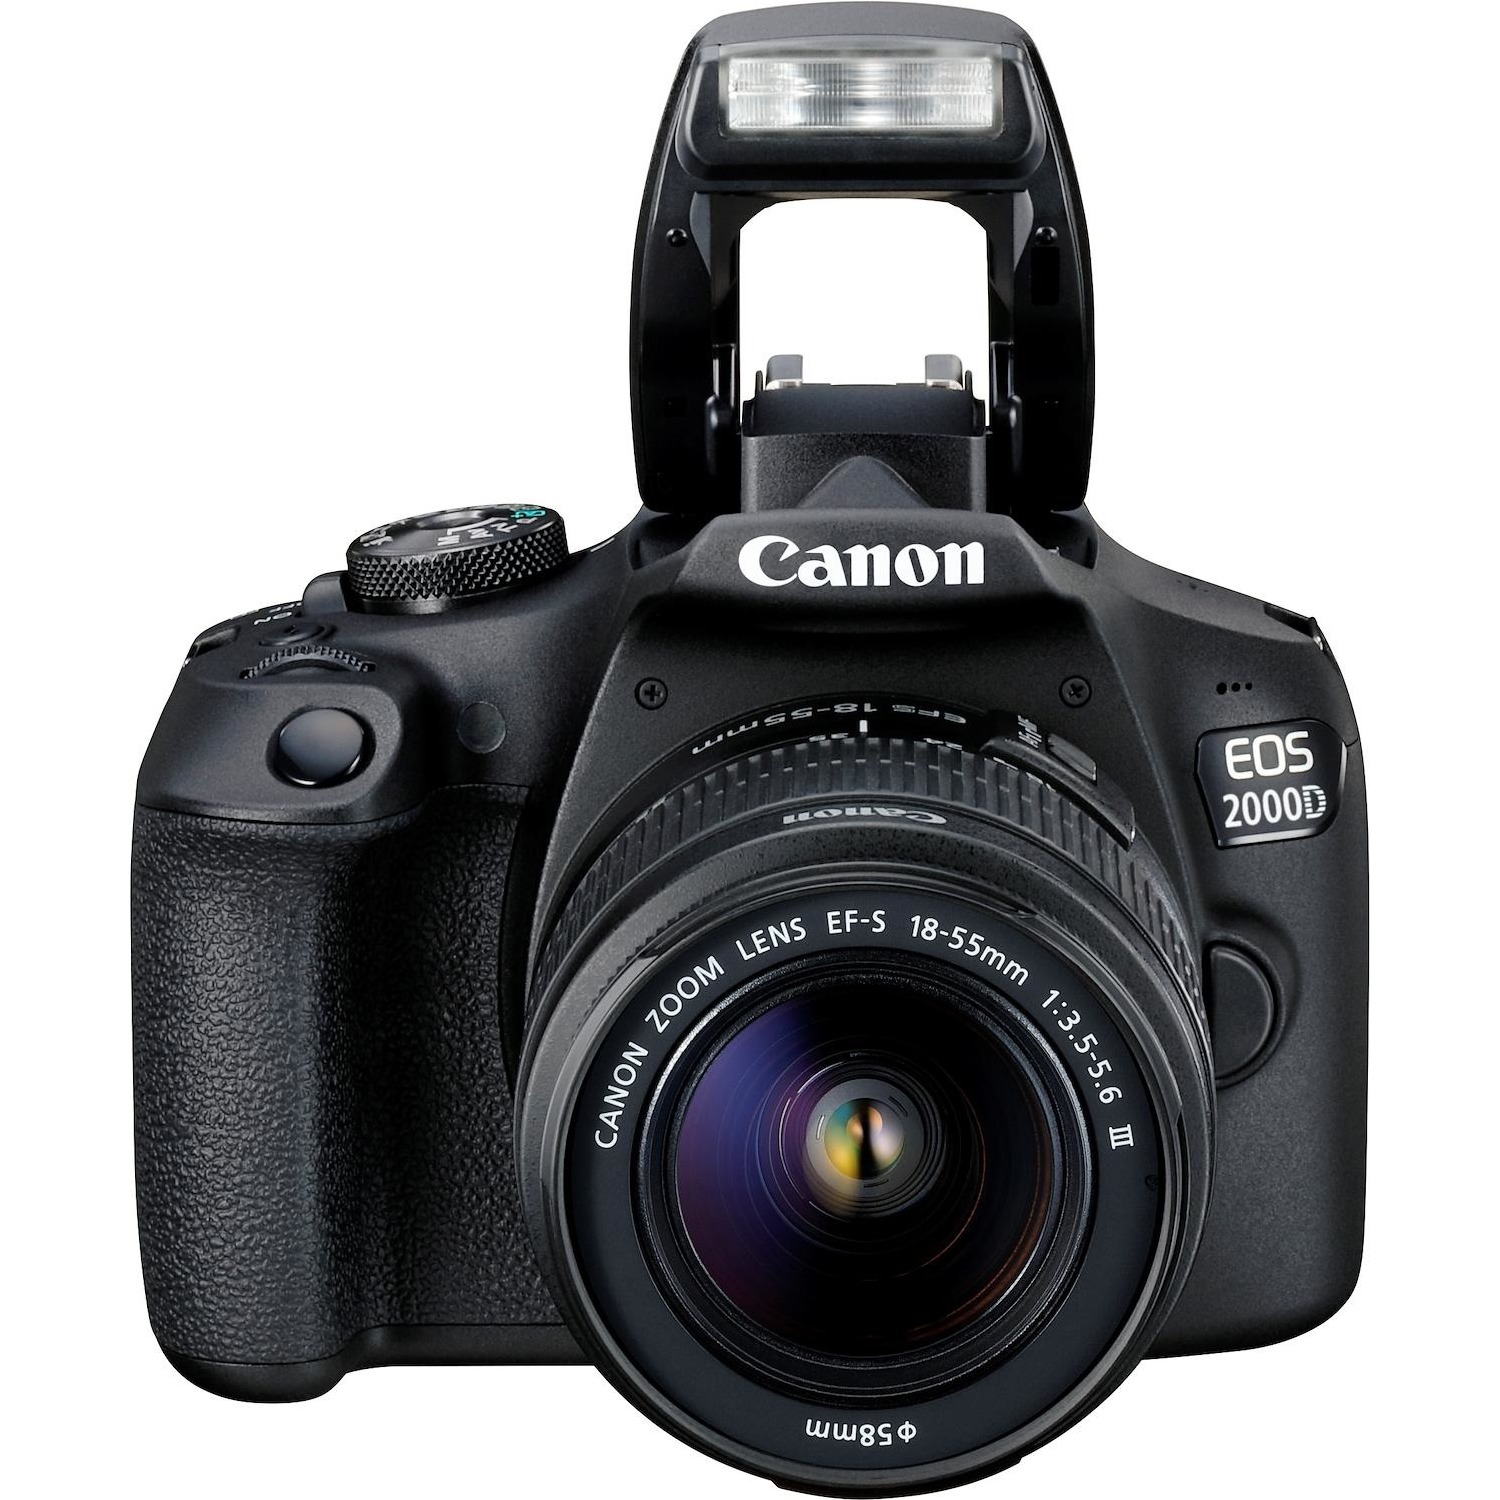 Immagine per Fotocamera reflex Canon EOS 2000D con ottica      EF 18-55mm DC III + borsa,scheda SD da 16GB da DIMOStore